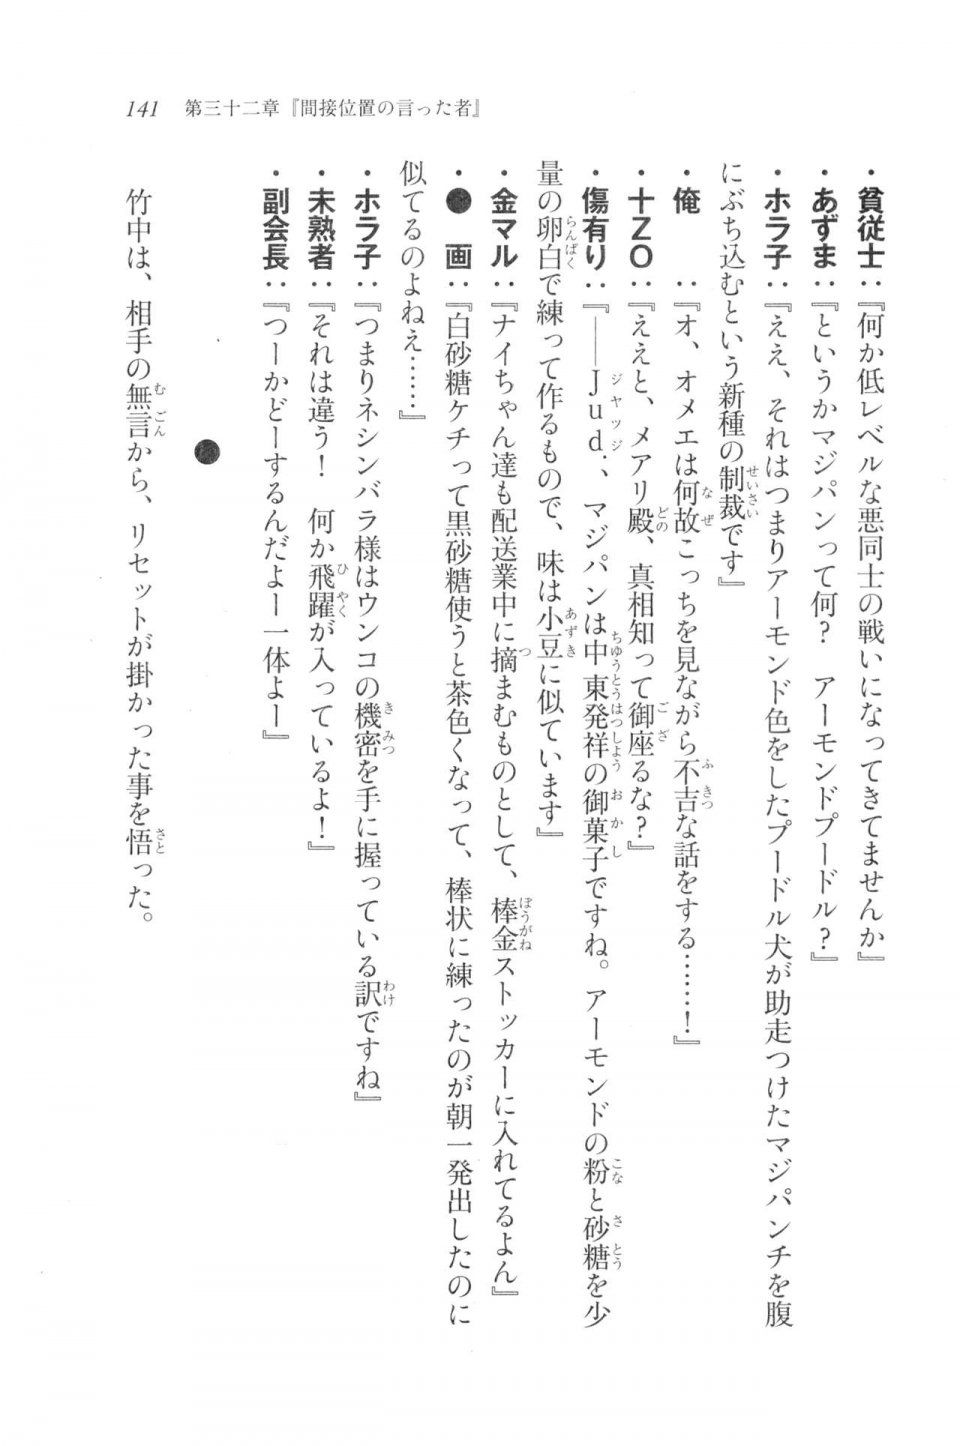 Kyoukai Senjou no Horizon LN Vol 20(8B) - Photo #141